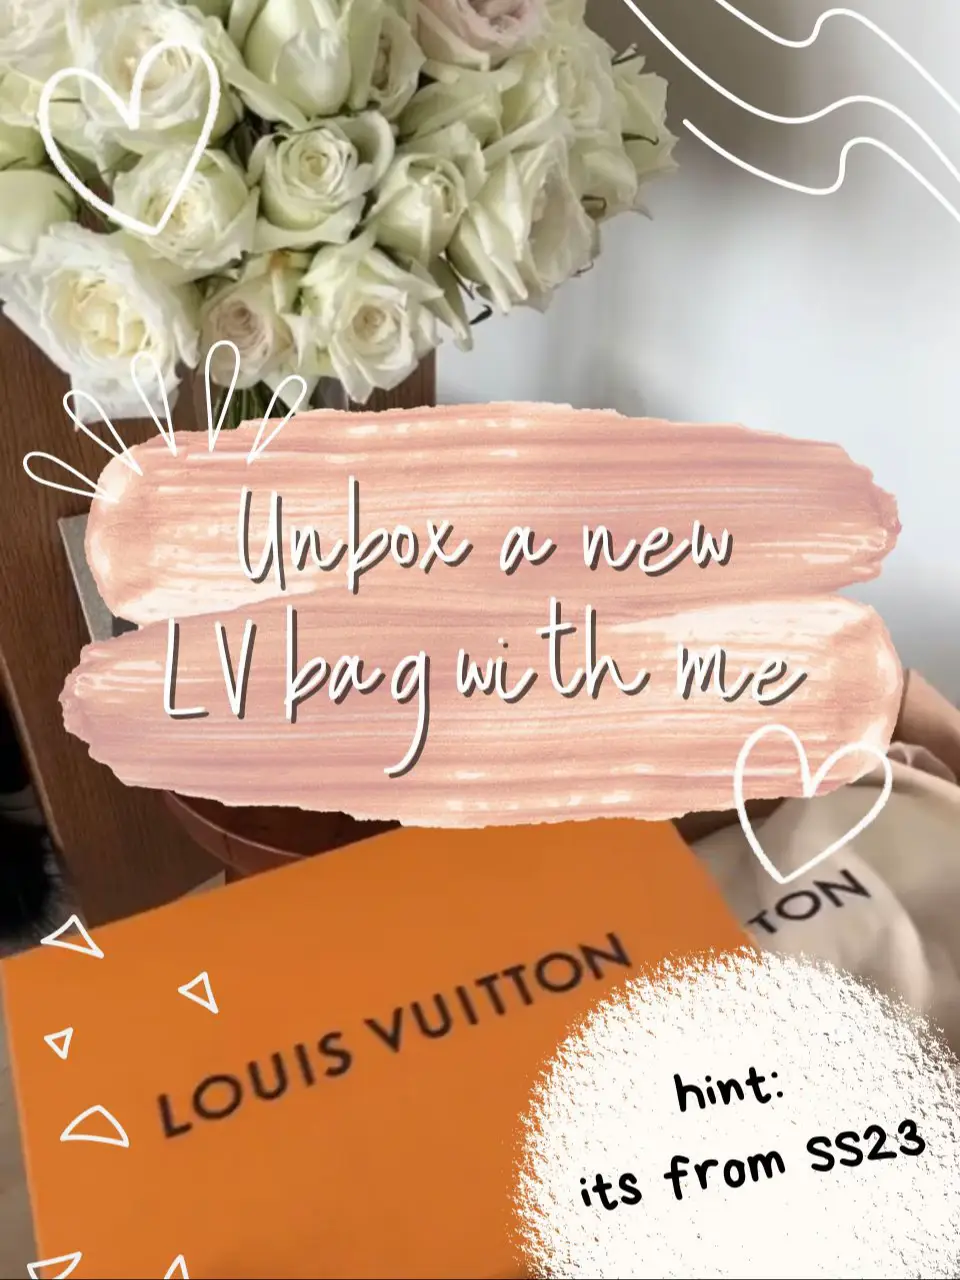 Louis Vuitton mini pochette, Limited edition unboxing